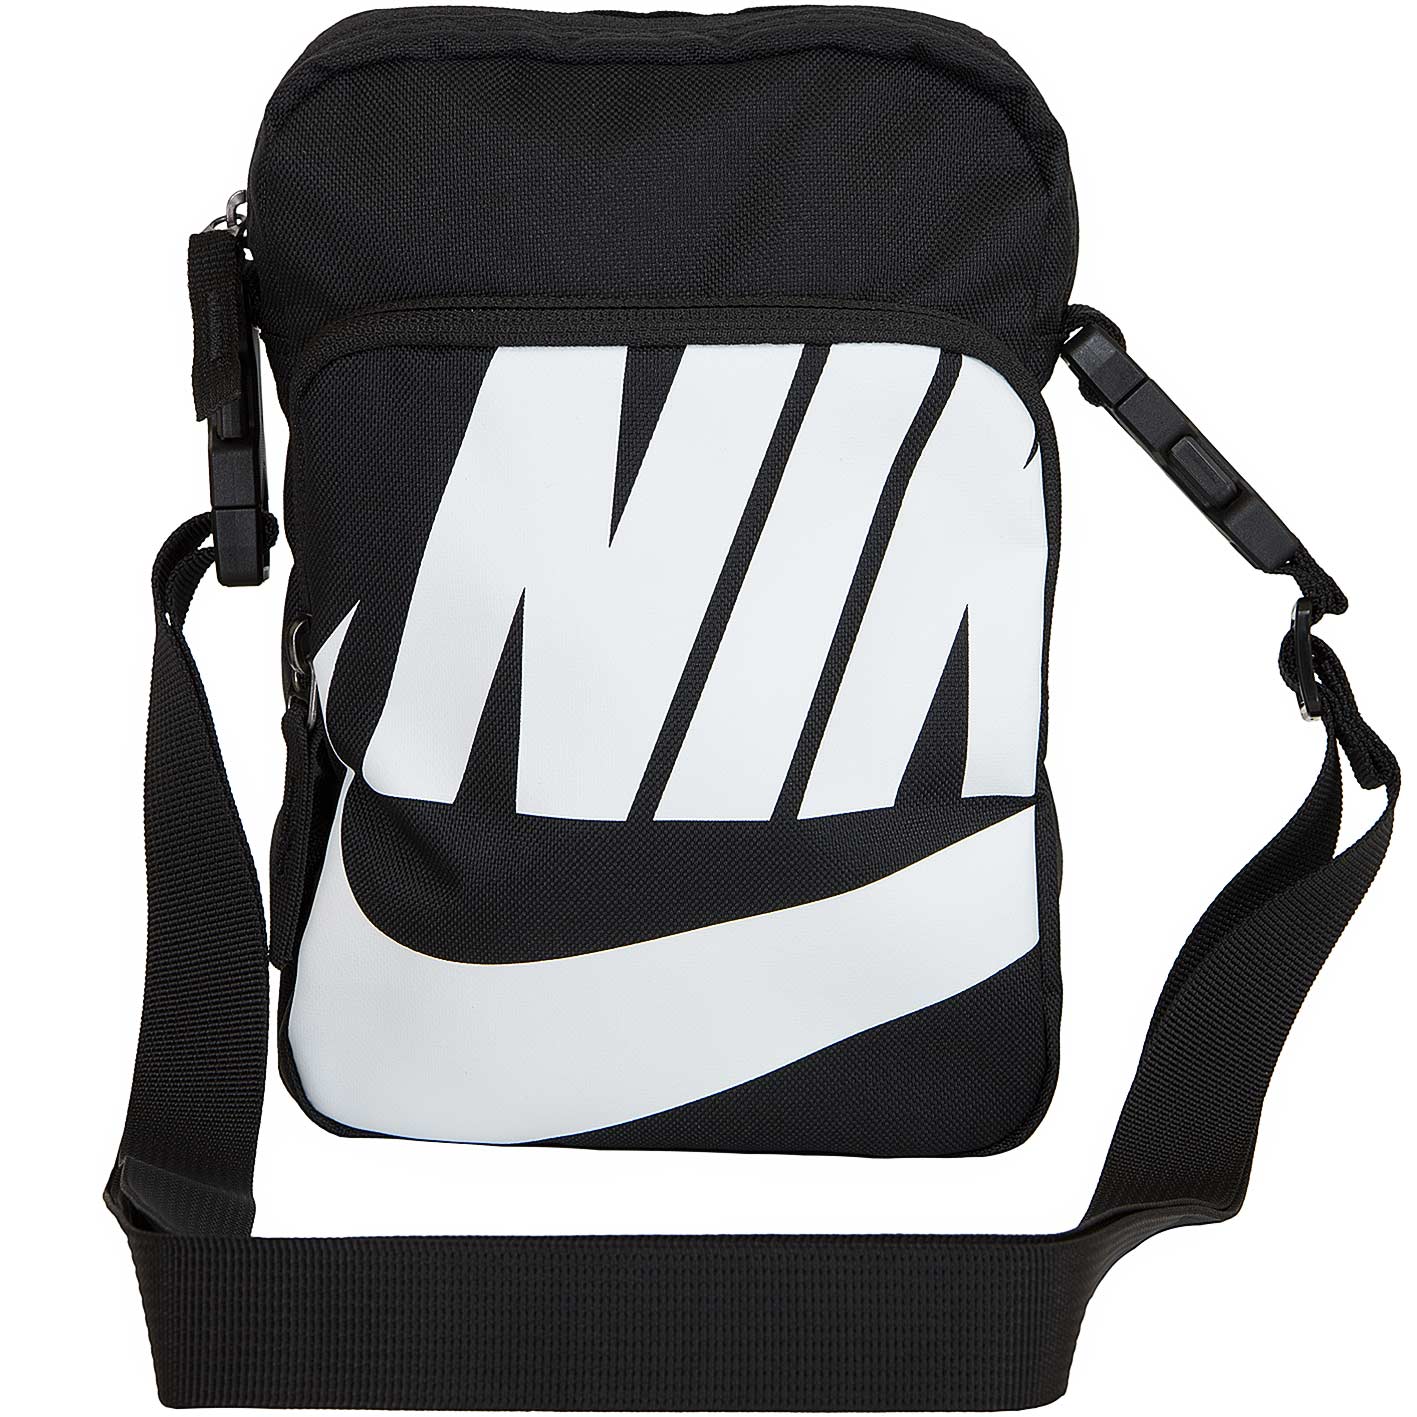 ☆ Nike Mini Tasche Heritage 2.0 schwarz/weiß - hier bestellen!